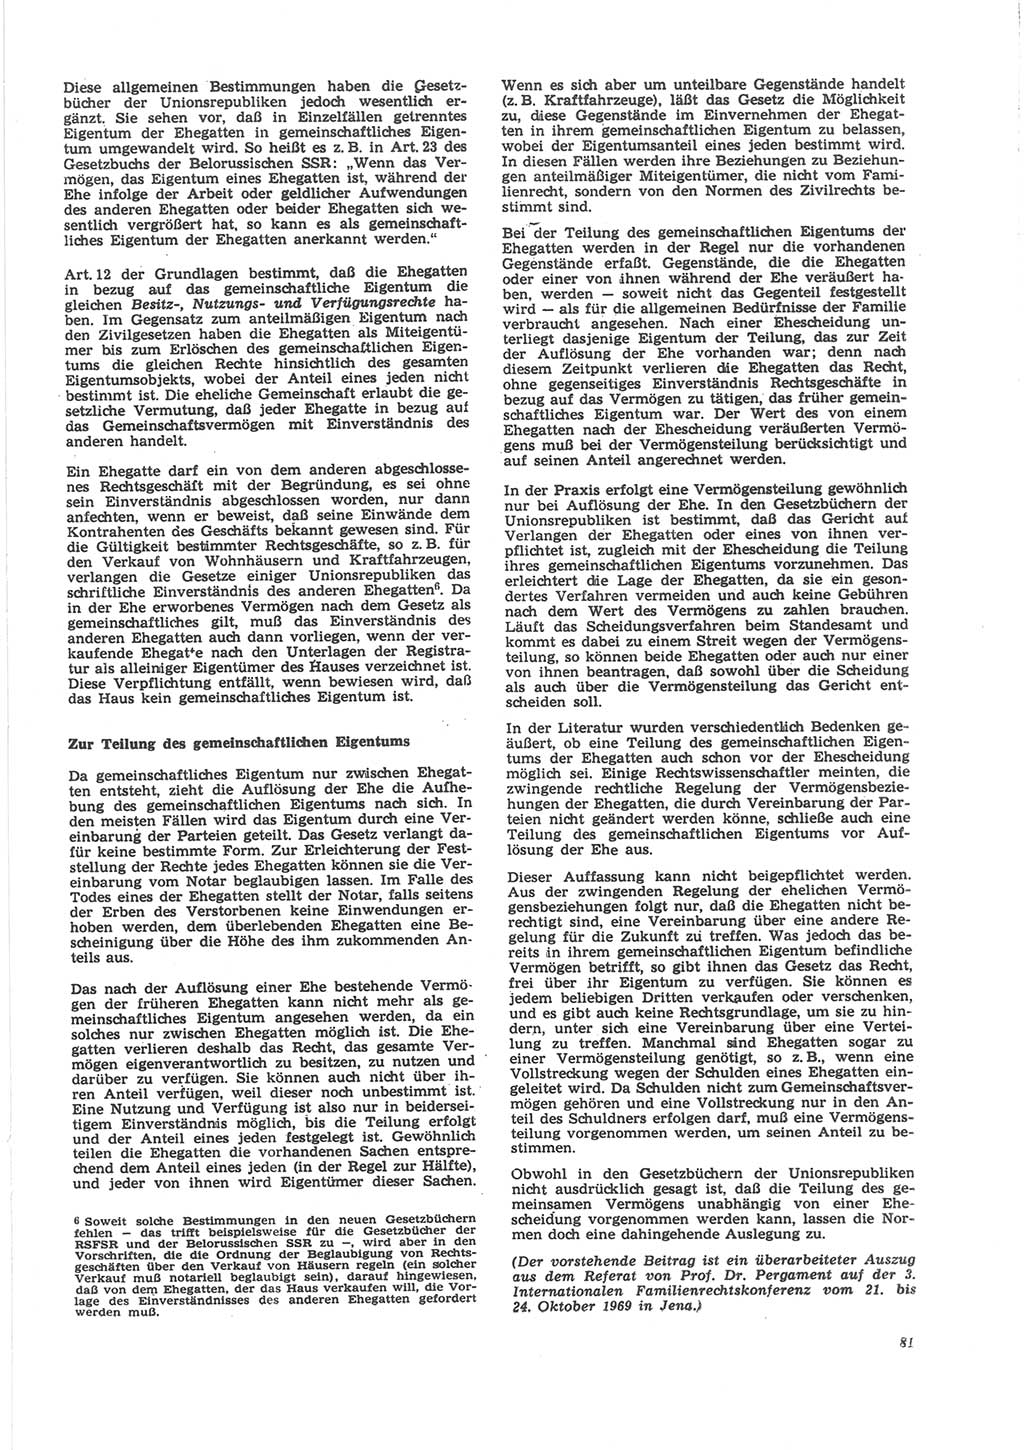 Neue Justiz (NJ), Zeitschrift für Recht und Rechtswissenschaft [Deutsche Demokratische Republik (DDR)], 24. Jahrgang 1970, Seite 81 (NJ DDR 1970, S. 81)